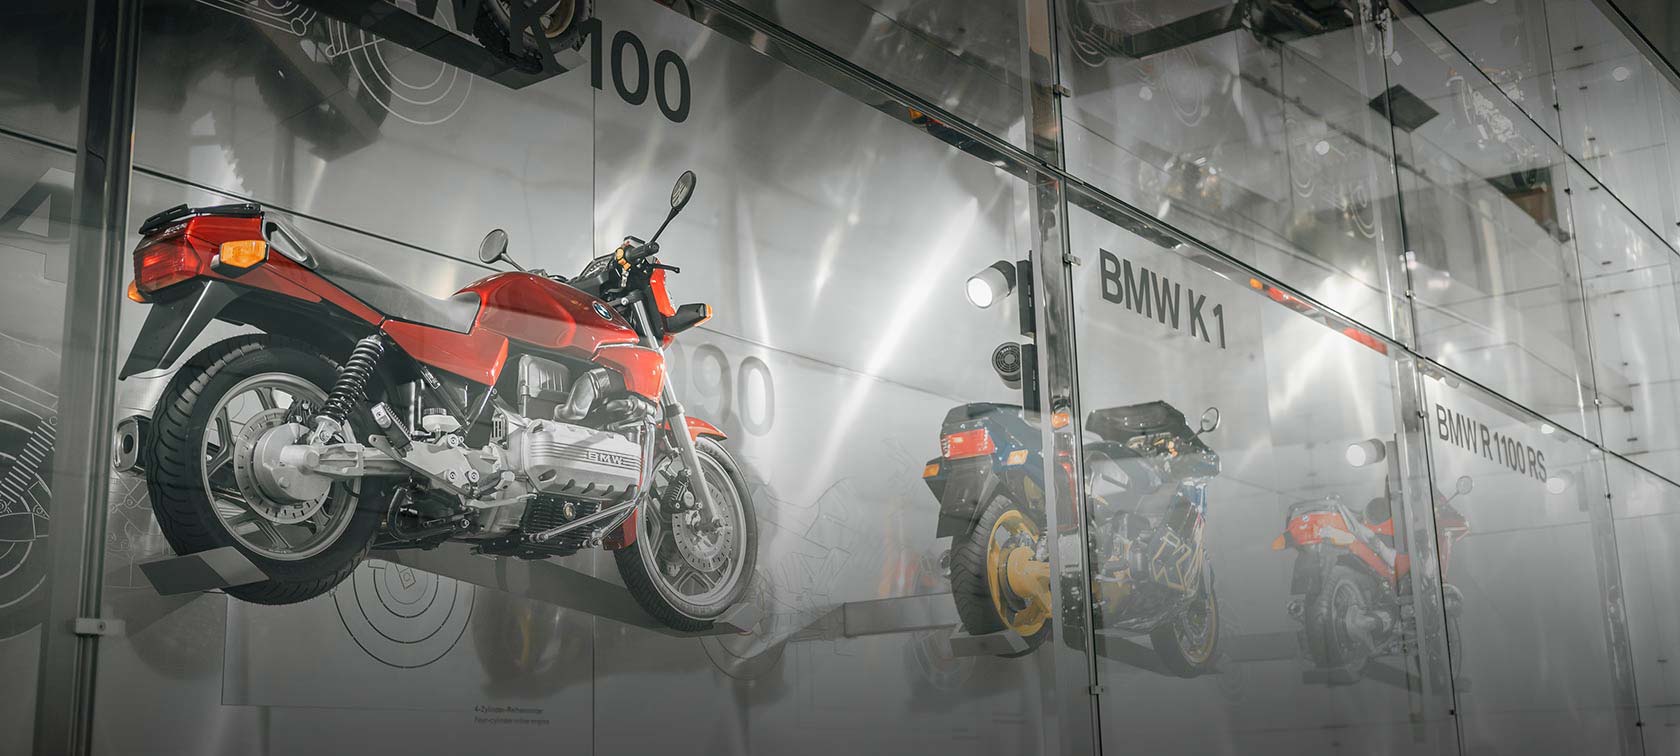 Wandinstallation diverser BMW Motorräder wie die BMW K 100 in rot und die BMW K1 in blau sowie gelb im BMW Museum